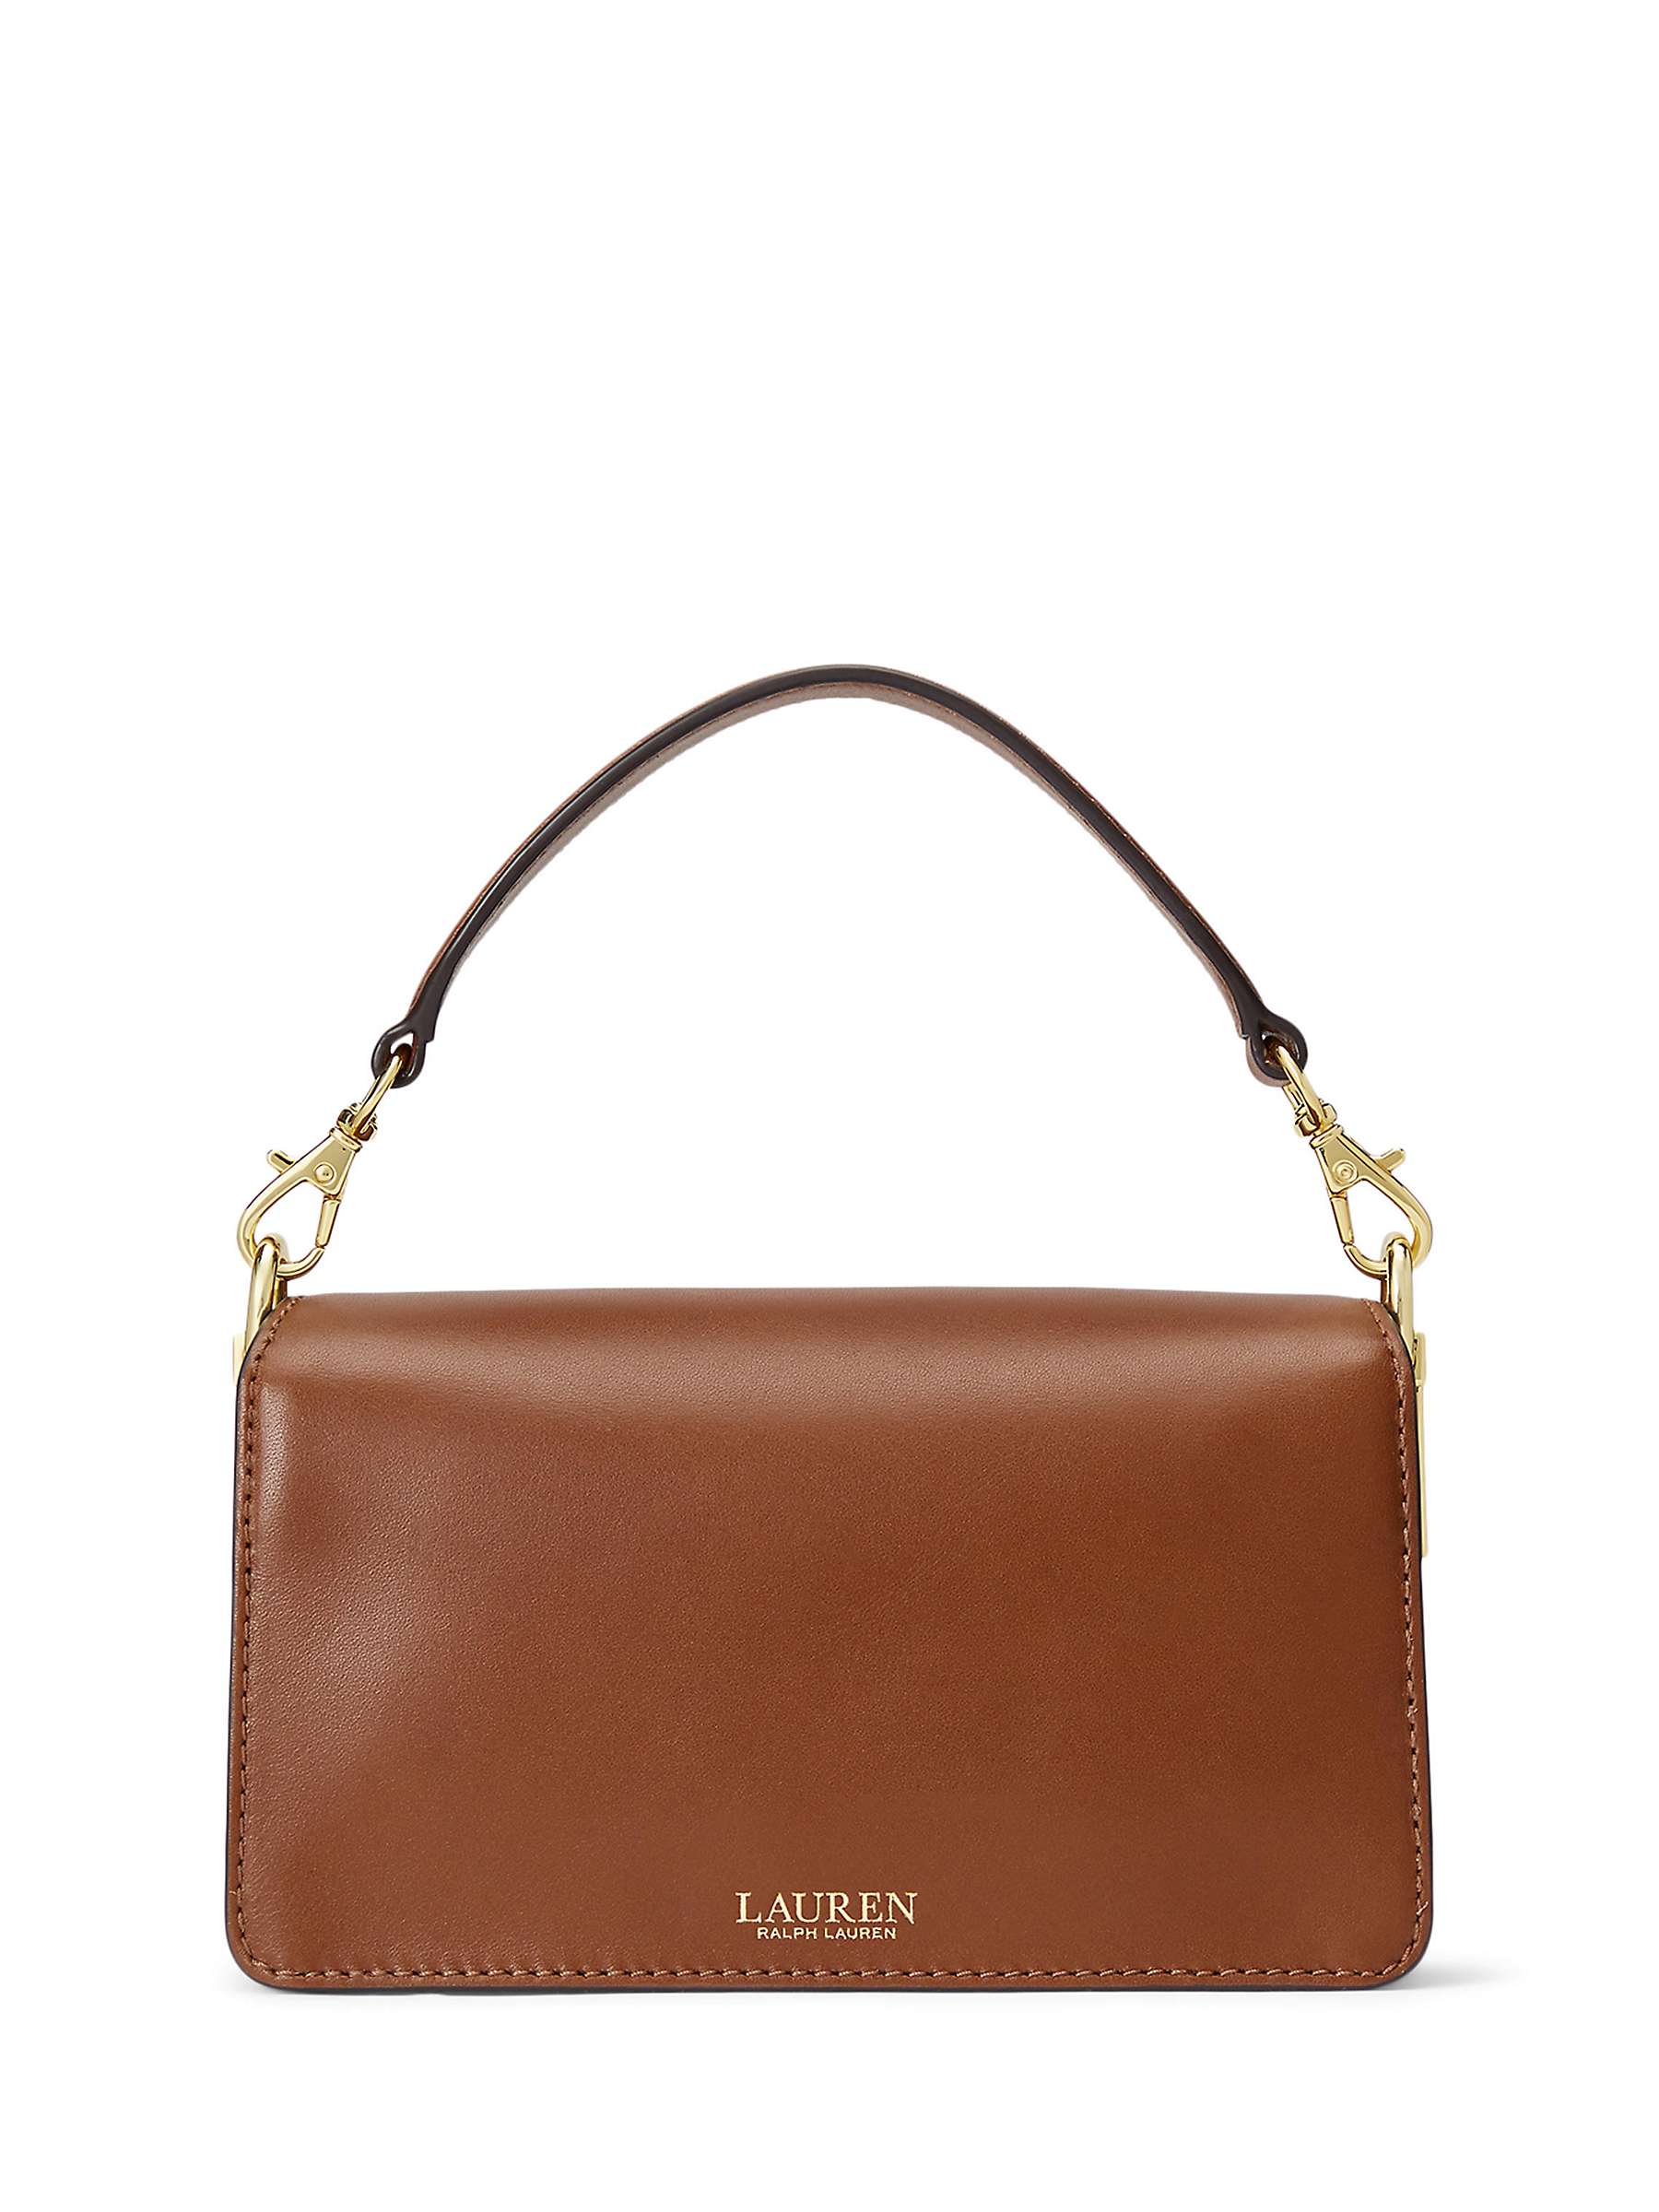 Buy Lauren Ralph Lauren Tayler 19 Leather Grab Bag Online at johnlewis.com